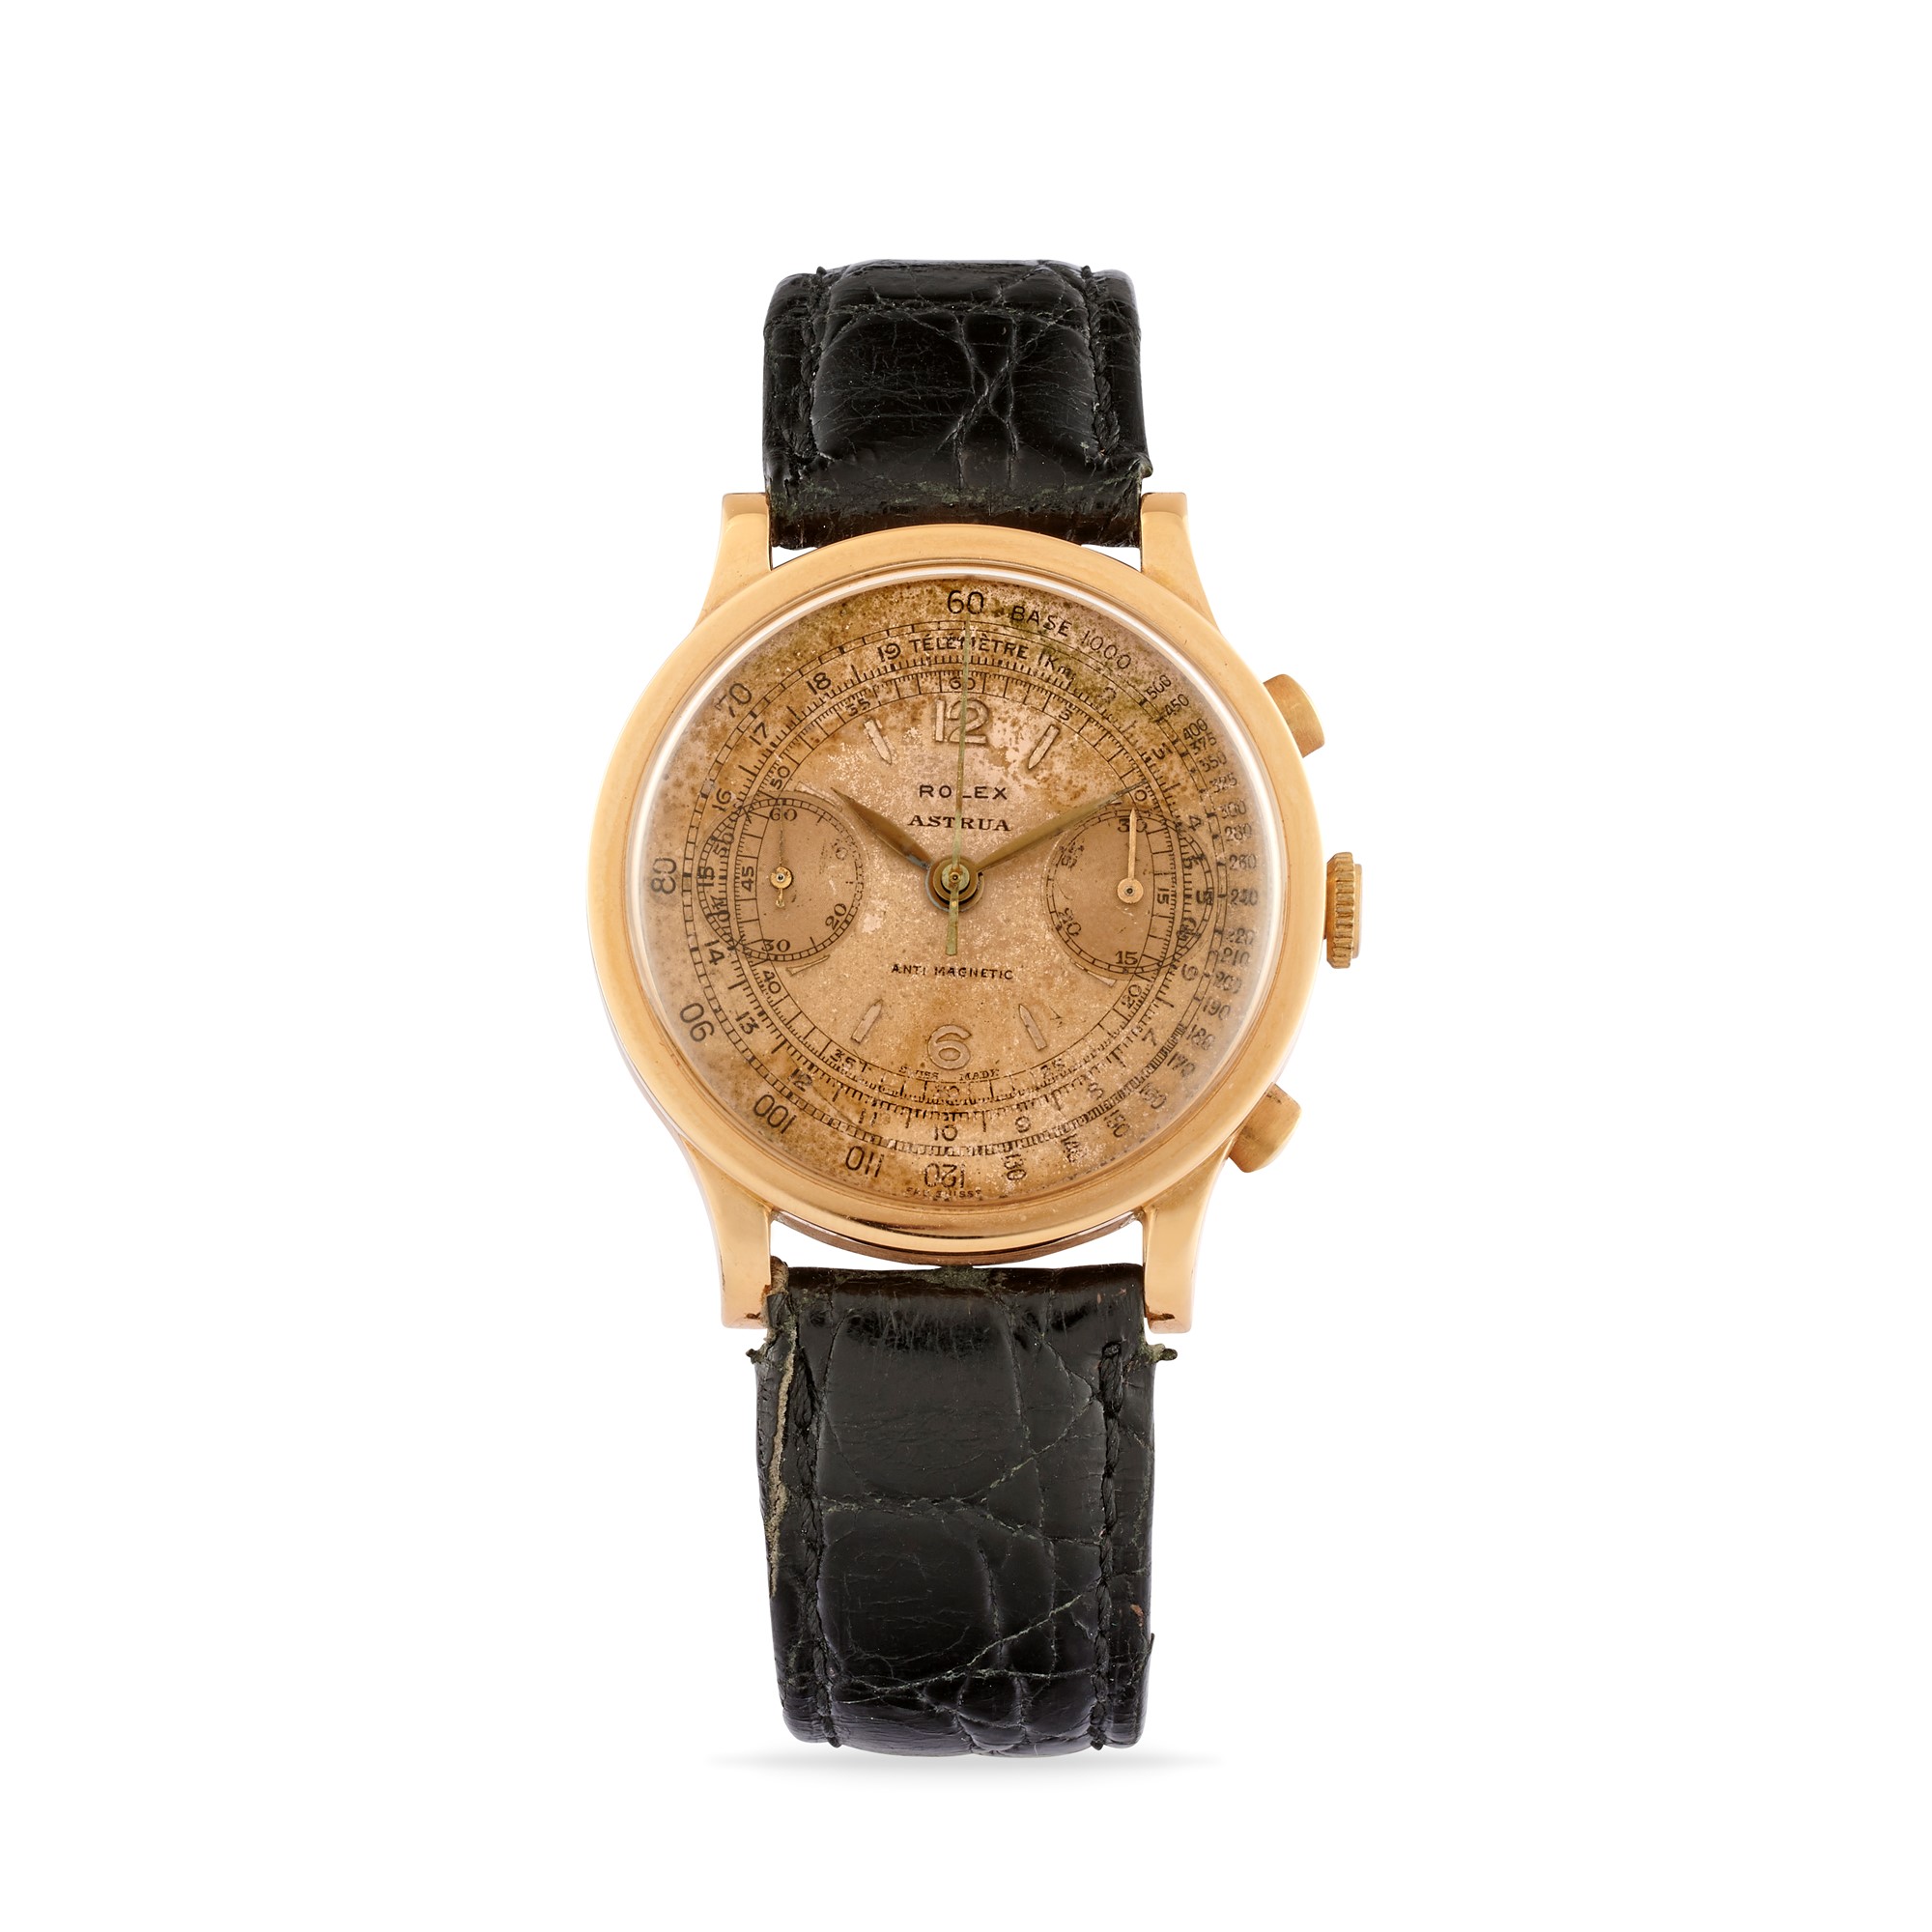 Rolex 2508 chronograph retailed by Astrua, '30s